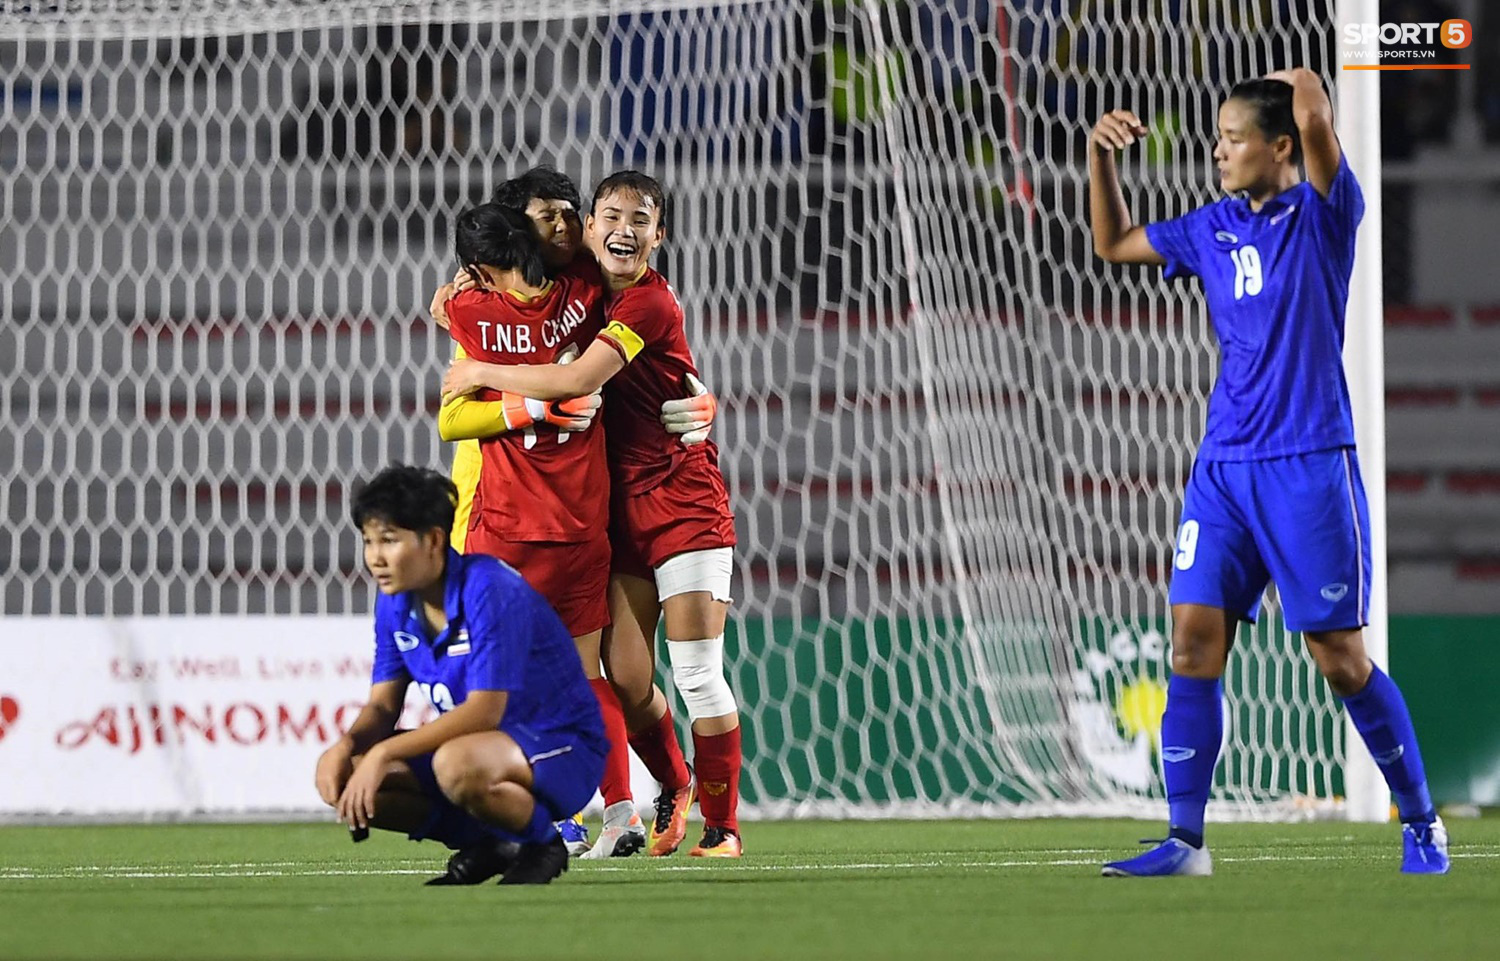 Chiến binh của tuyển nữ Việt Nam: Khi nàng Kiều biết đá bóng, mơ World Cup và câu nói hết hồn của bố mẹ khi thấy máu đỏ trên đùi con gái - Ảnh 3.